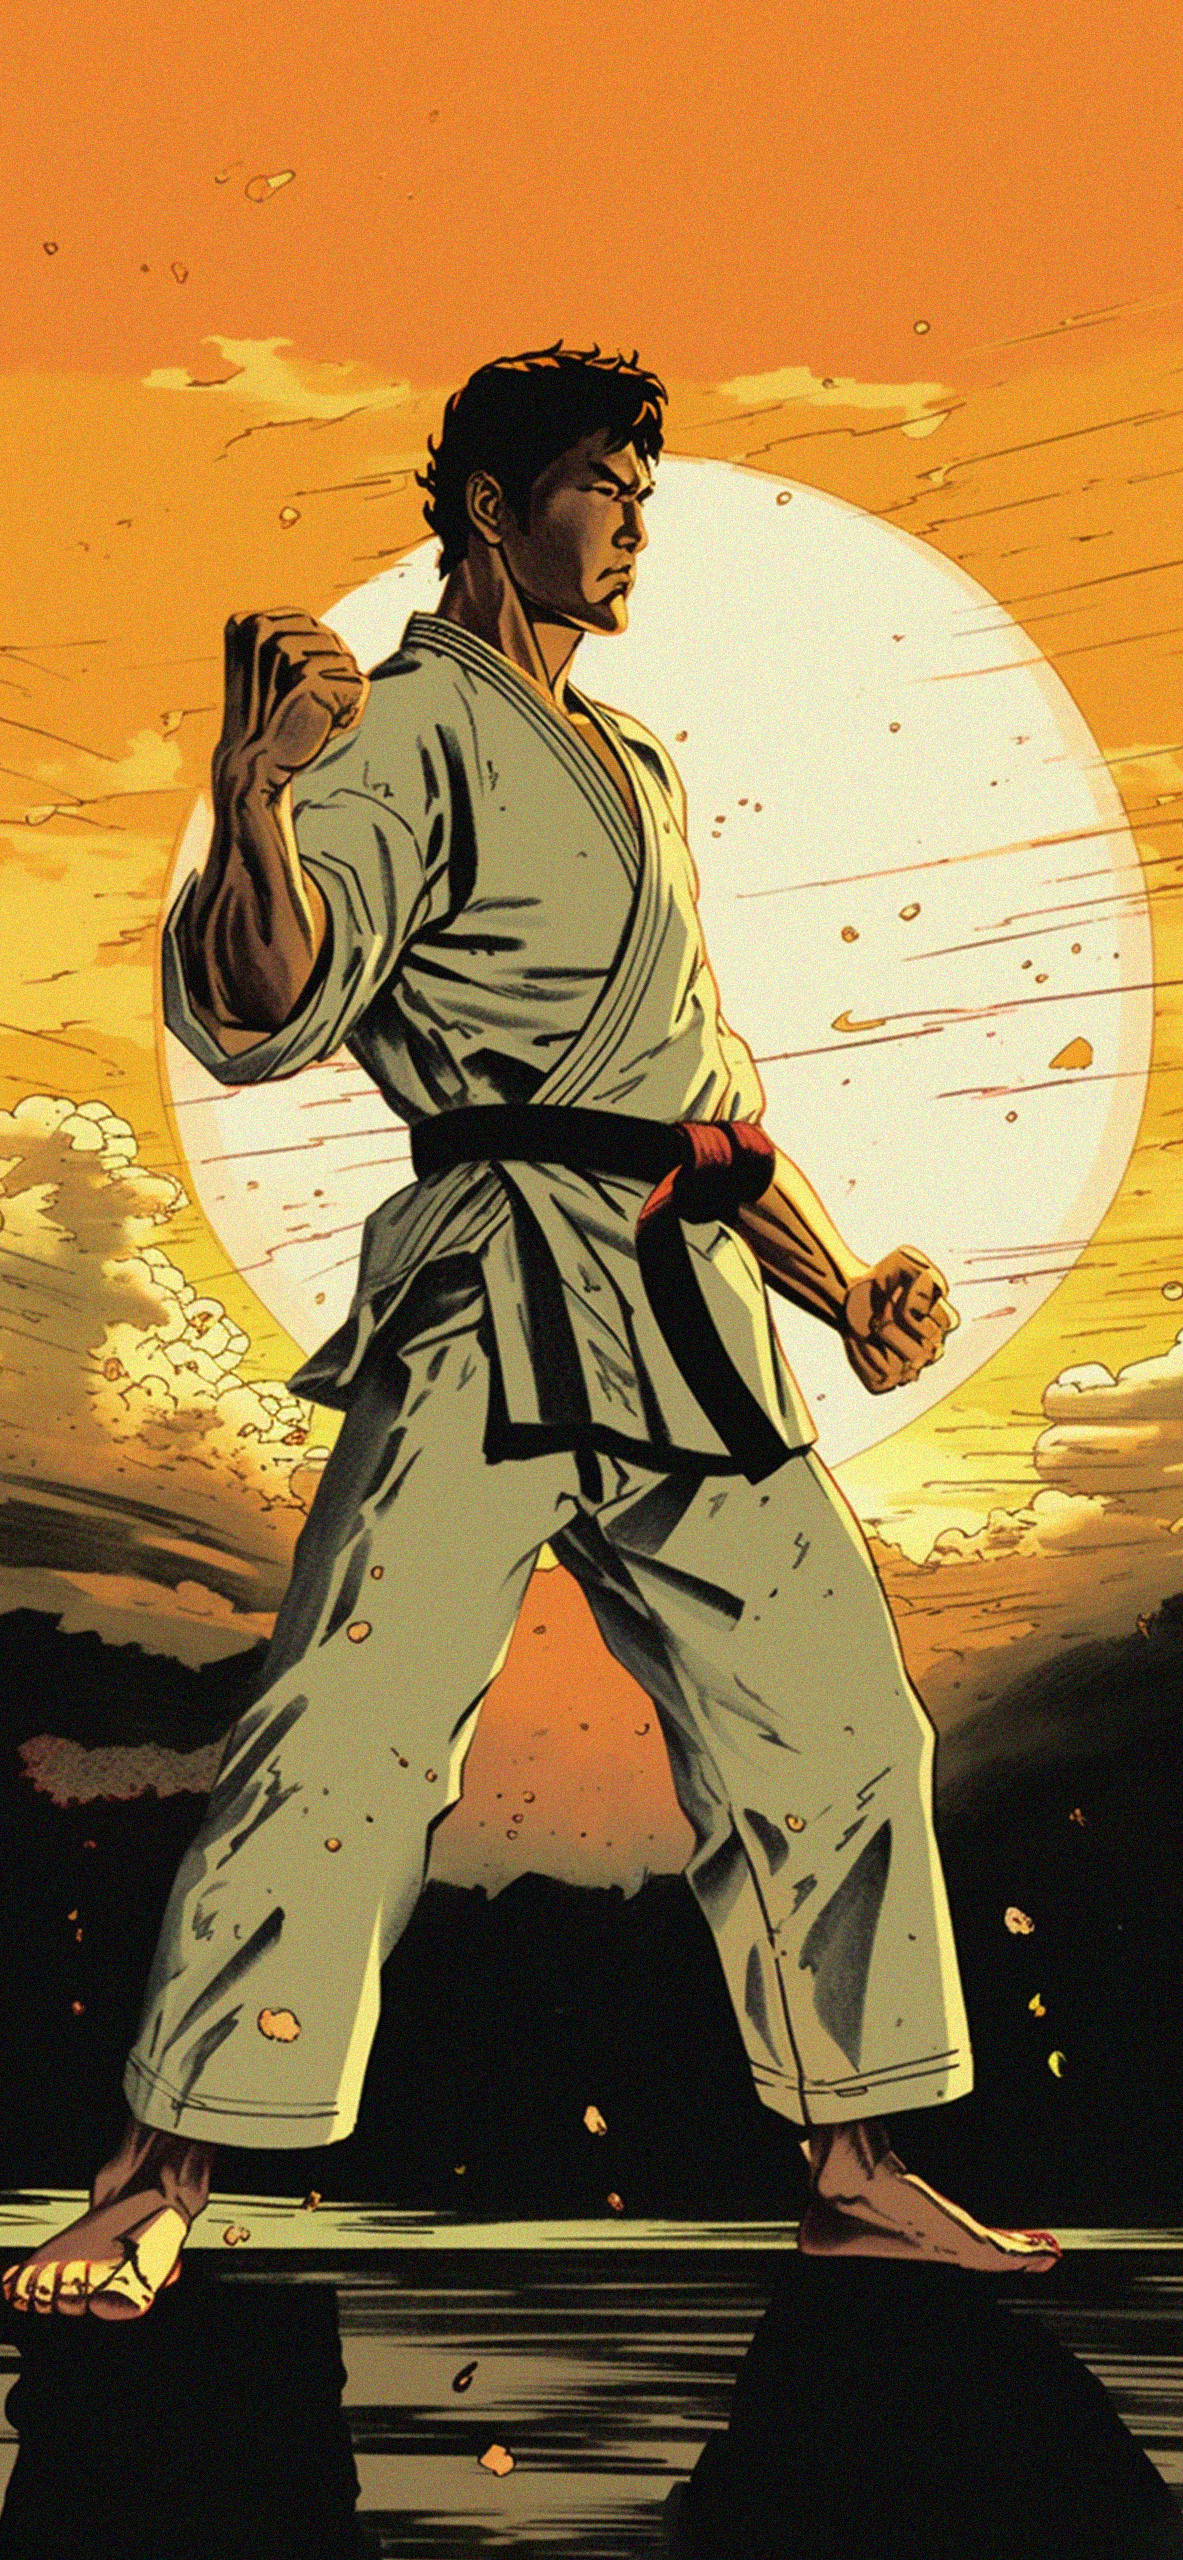 karate sunset art wallpaper